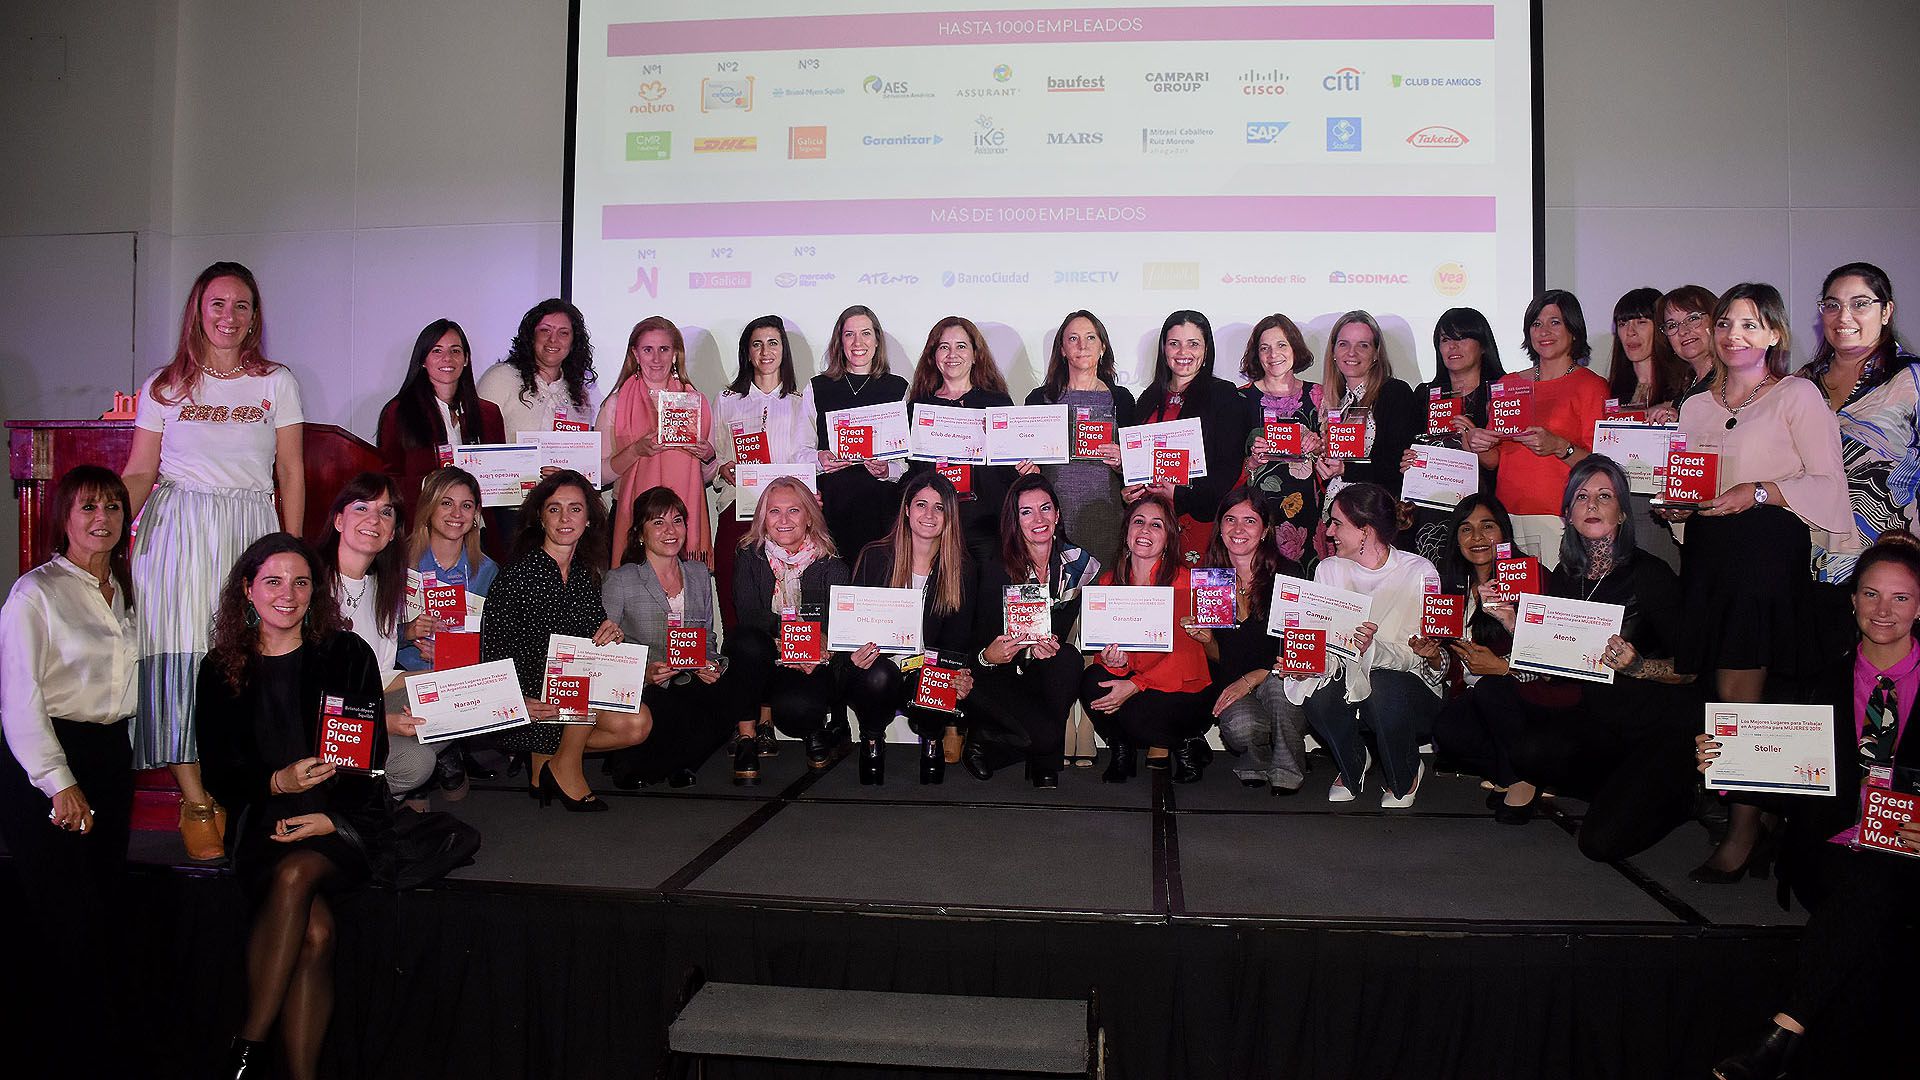 Fueron 3o empresas las galardonadas en la premiación en el Hotel Panamericano donde Great Place to Work valoró los Mejores Lugares para trabajar para las mujeres en la Argentina. Aquí la foto final con los mejores